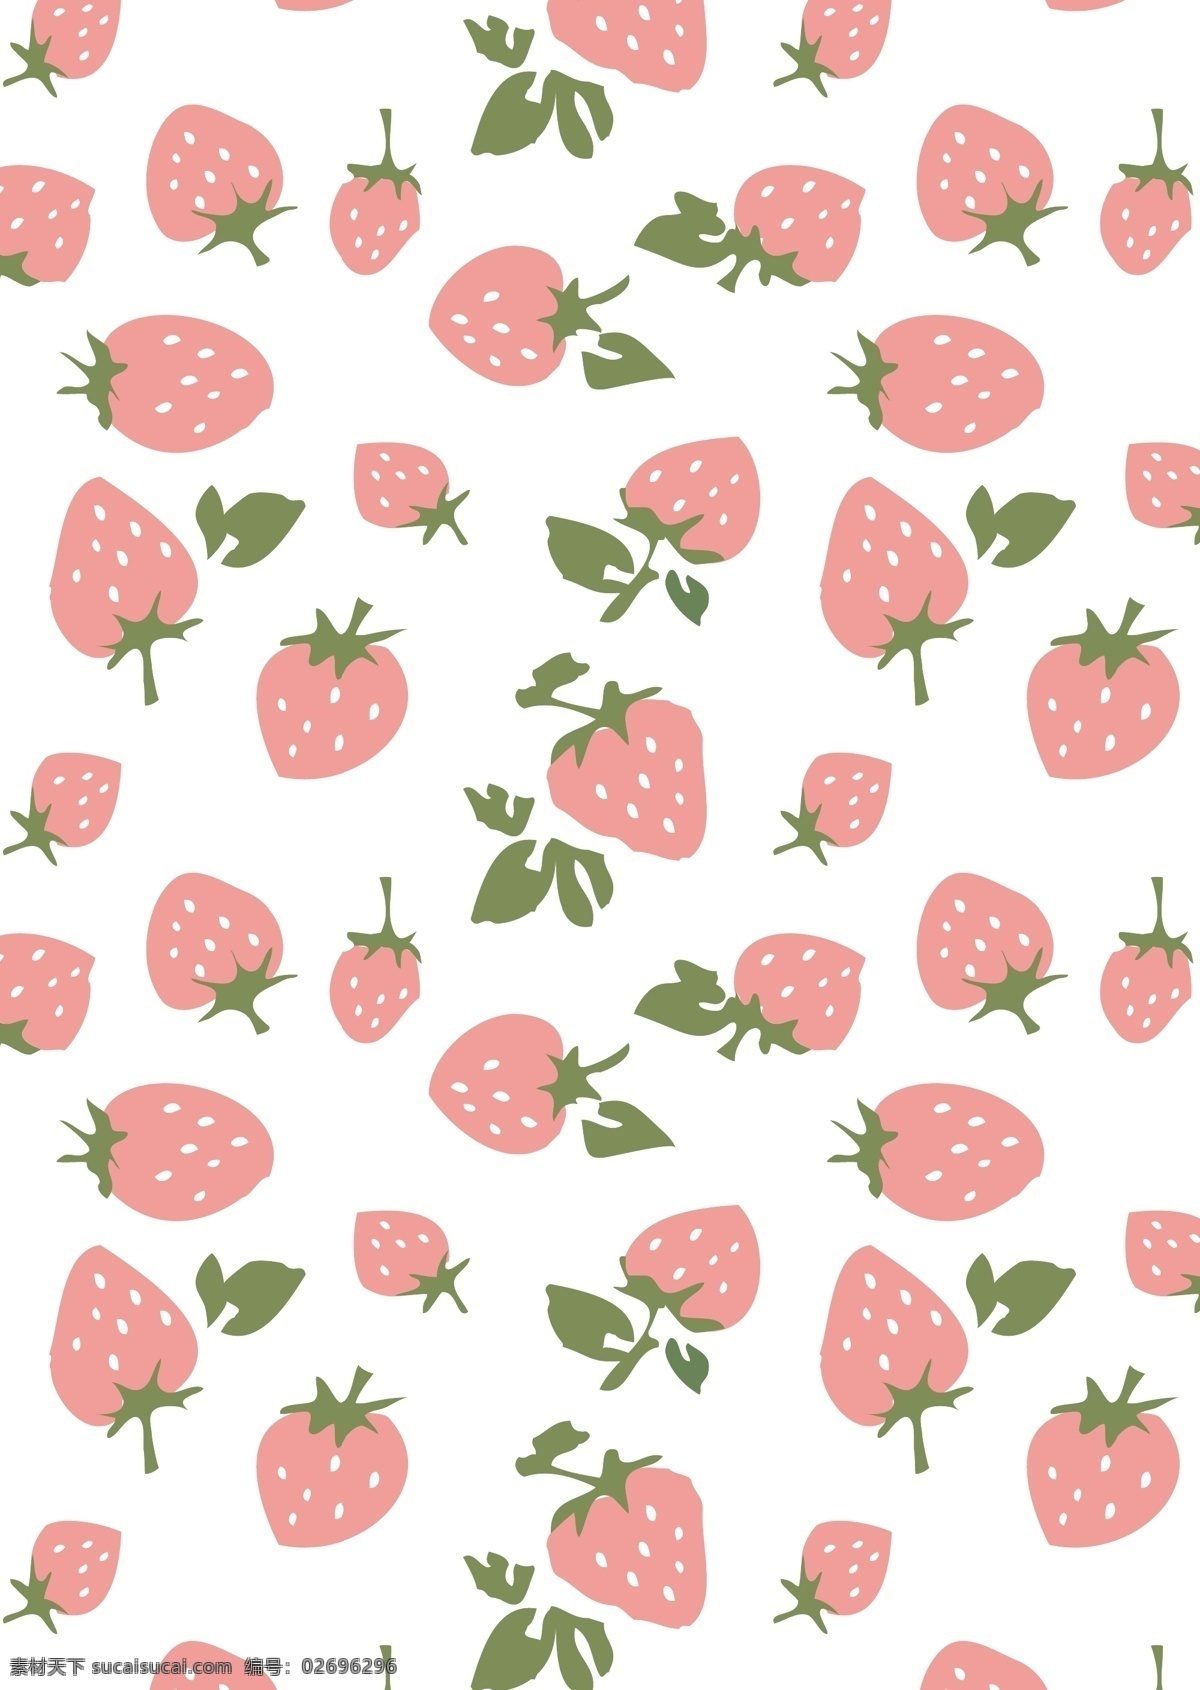 草莓 草莓布花 草莓花布 草莓花纹 草莓背景 草莓底纹 四方连续 草莓矢量 水果 热带水果 面料 矢量 背景底纹 生物世界